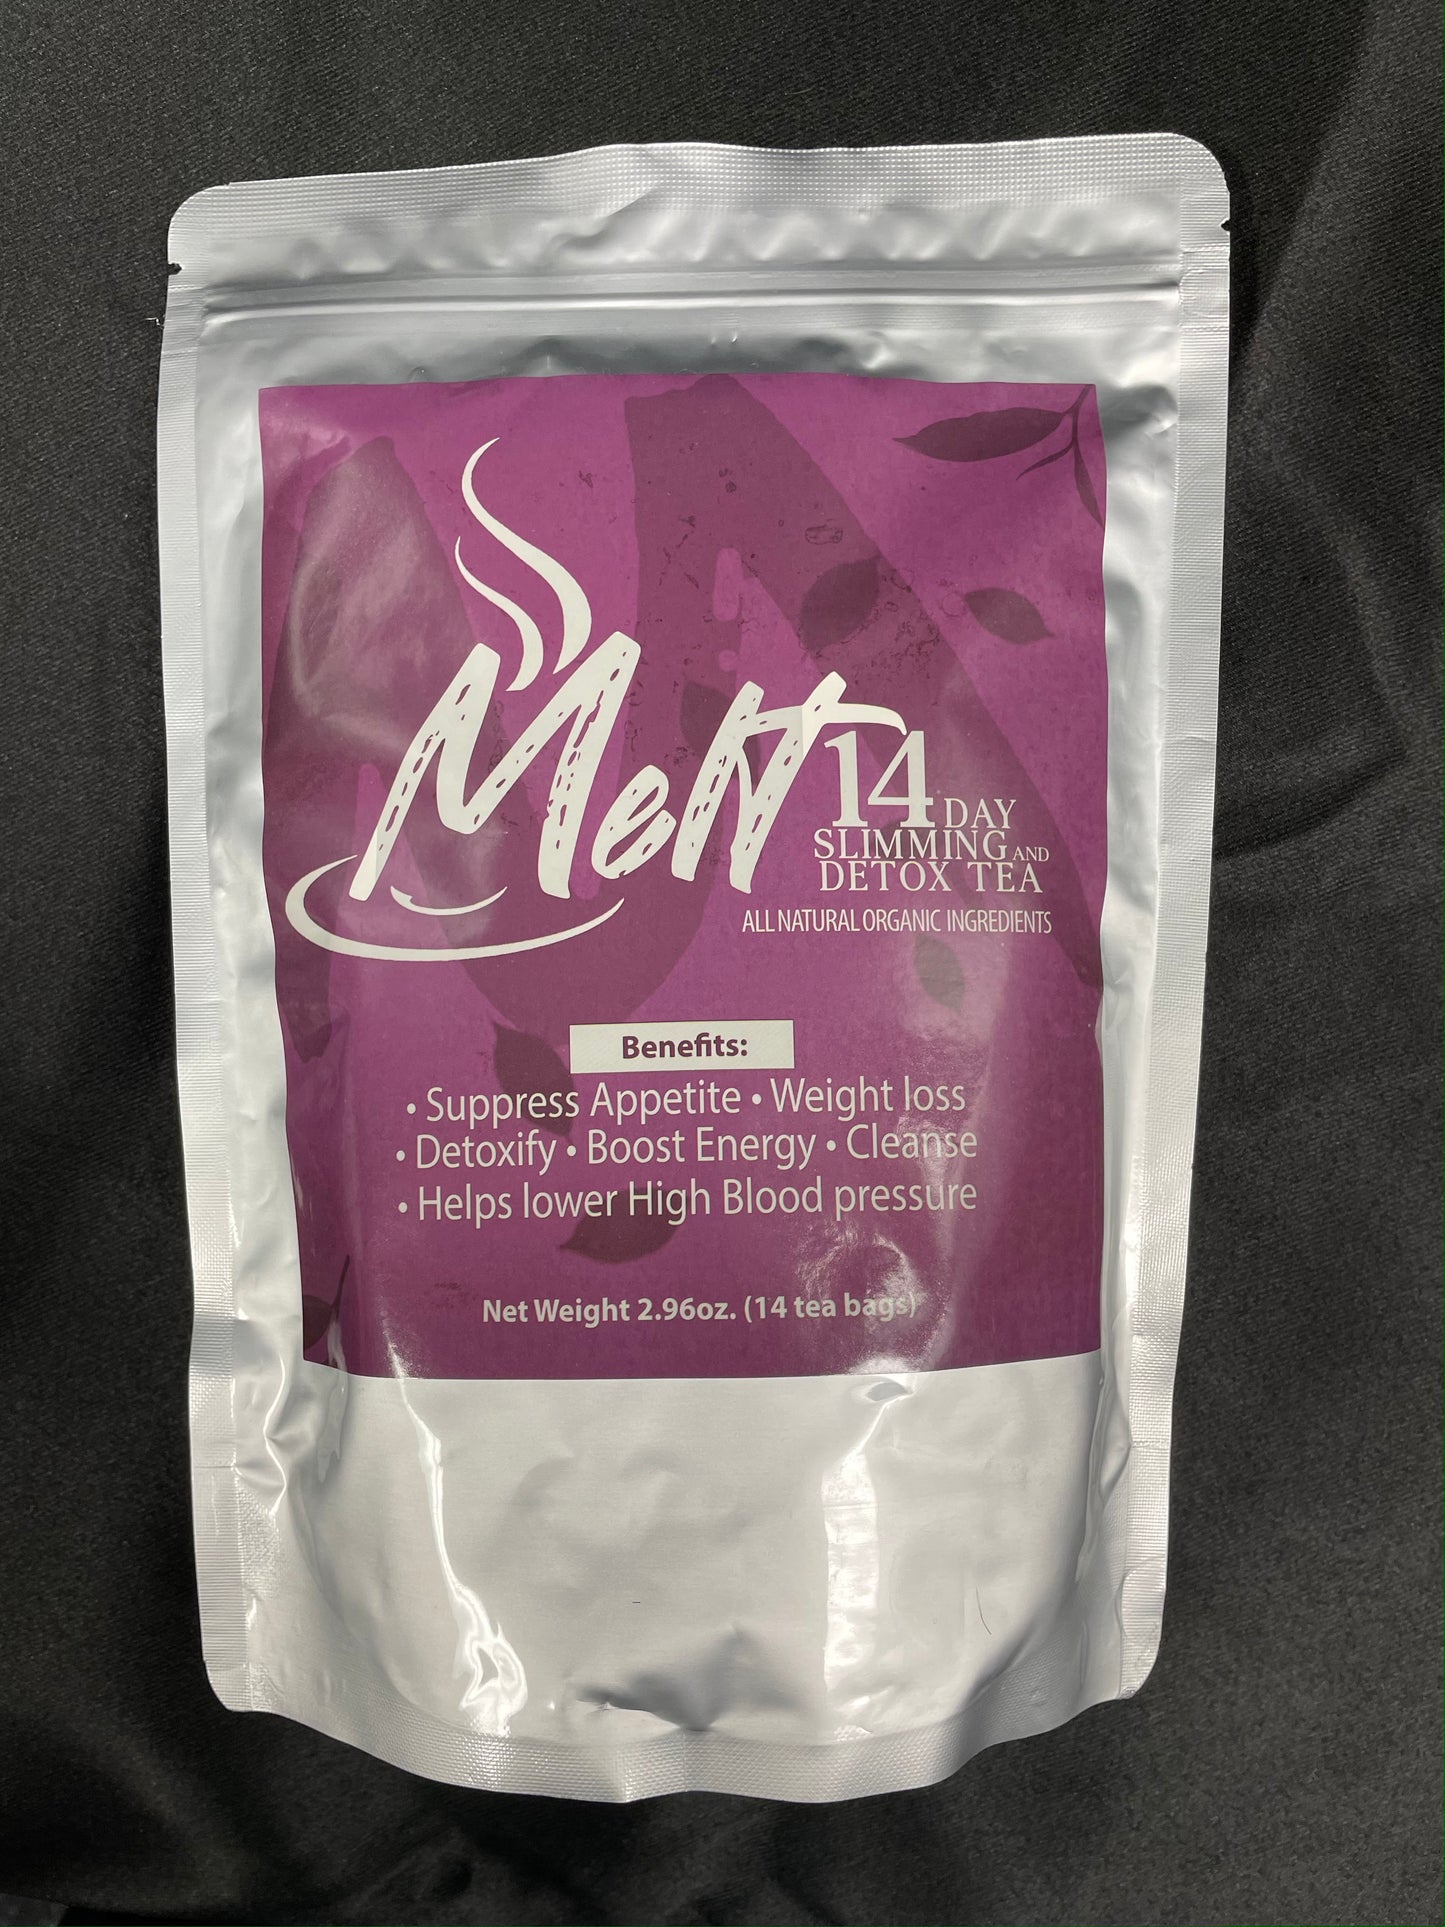 Melt - 14 Day Slimming & Detox Tea